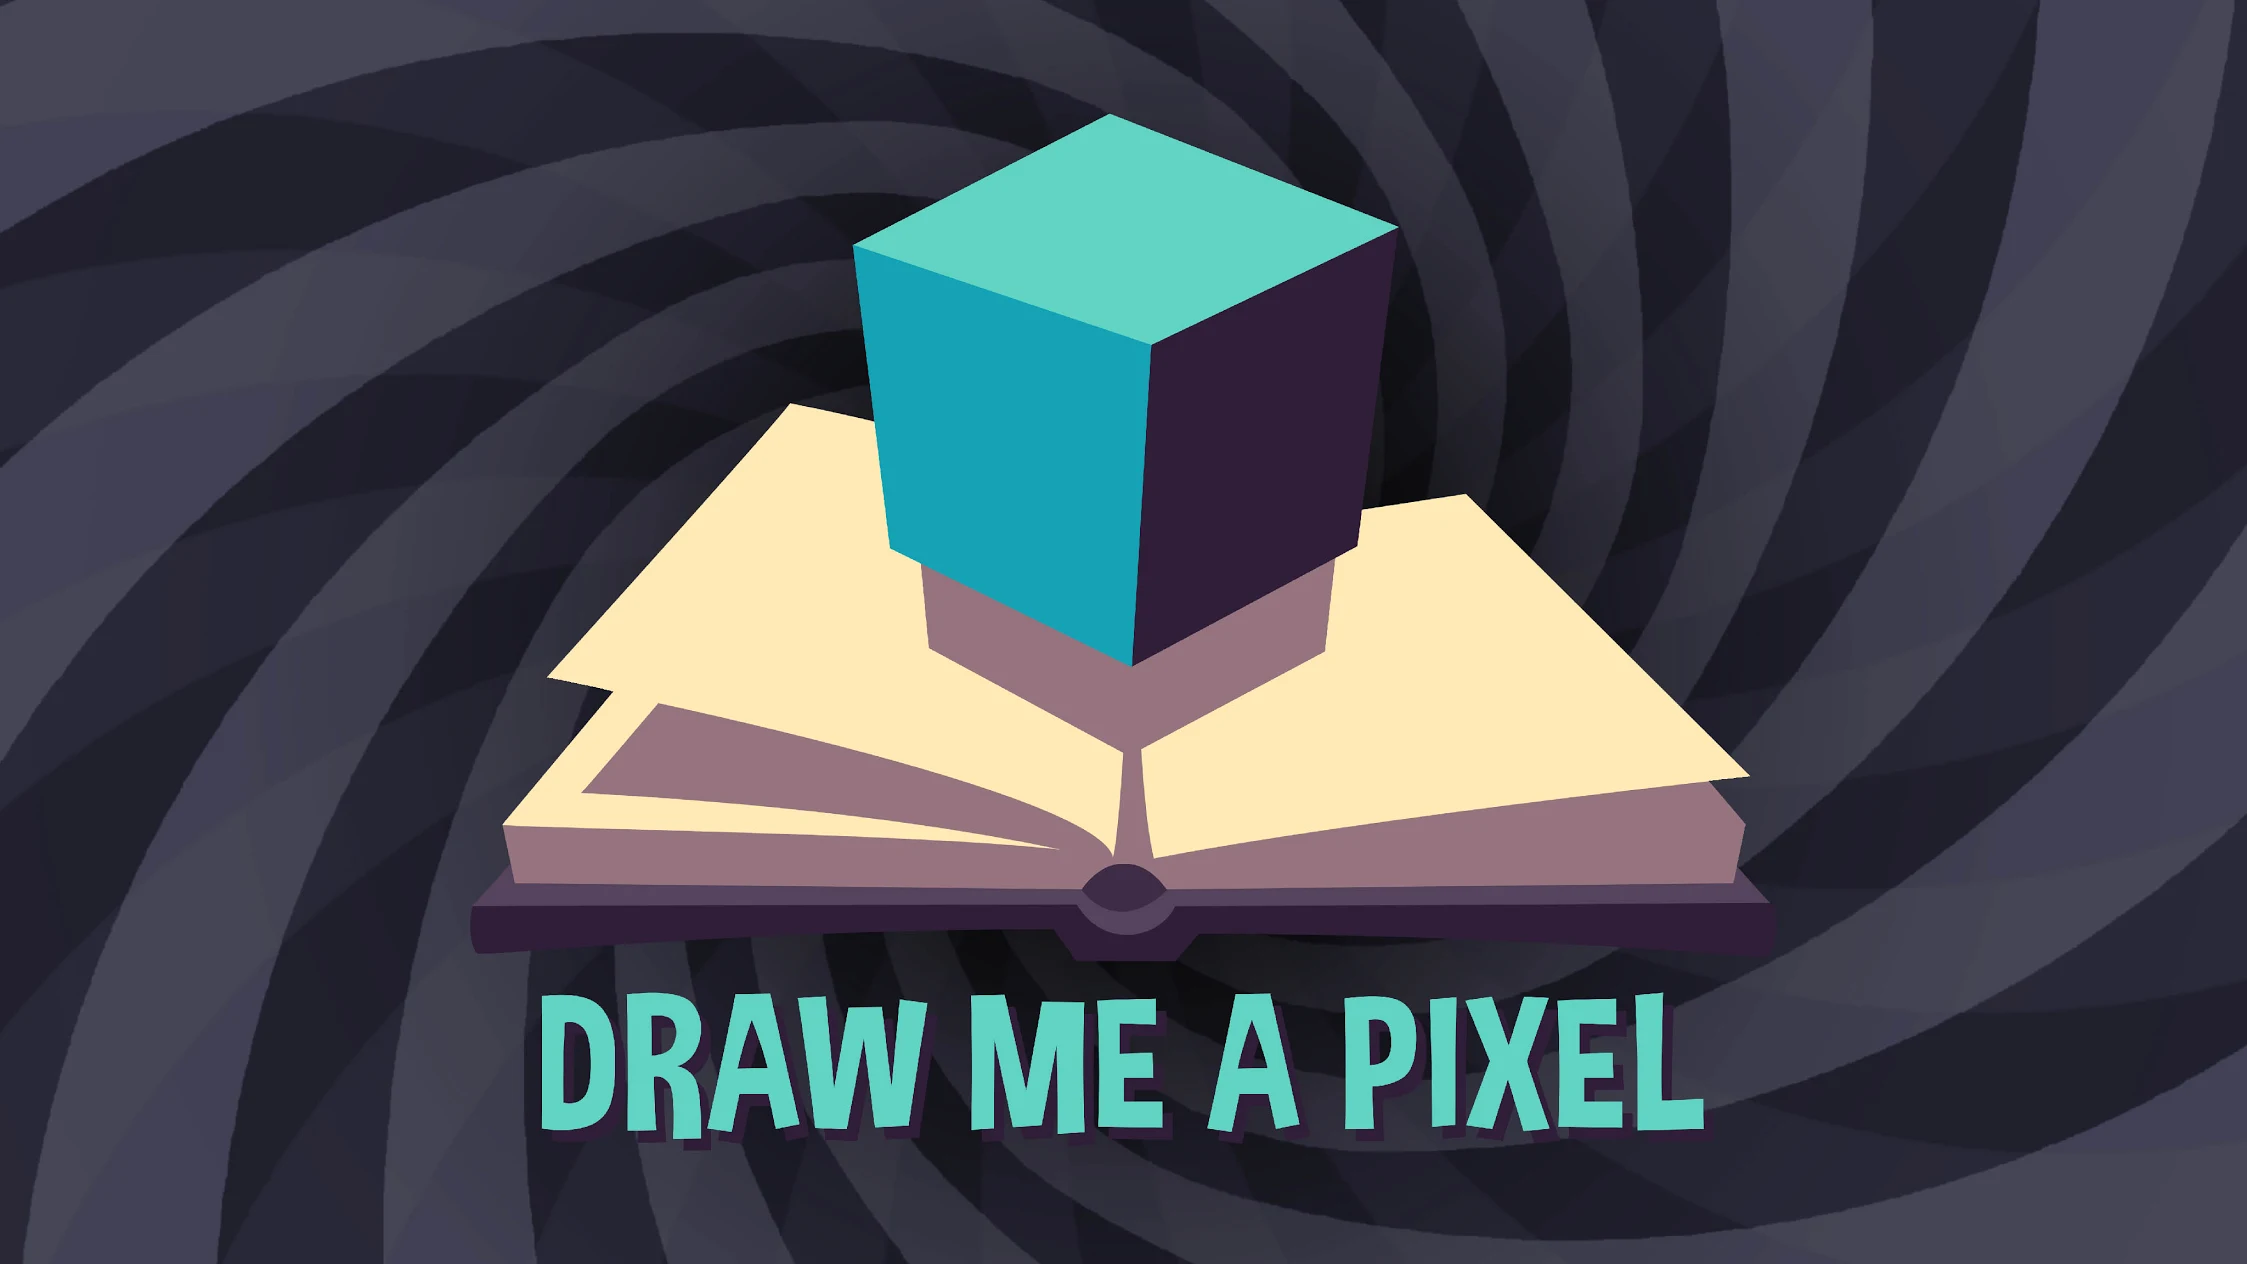 Draw Me A Pixel